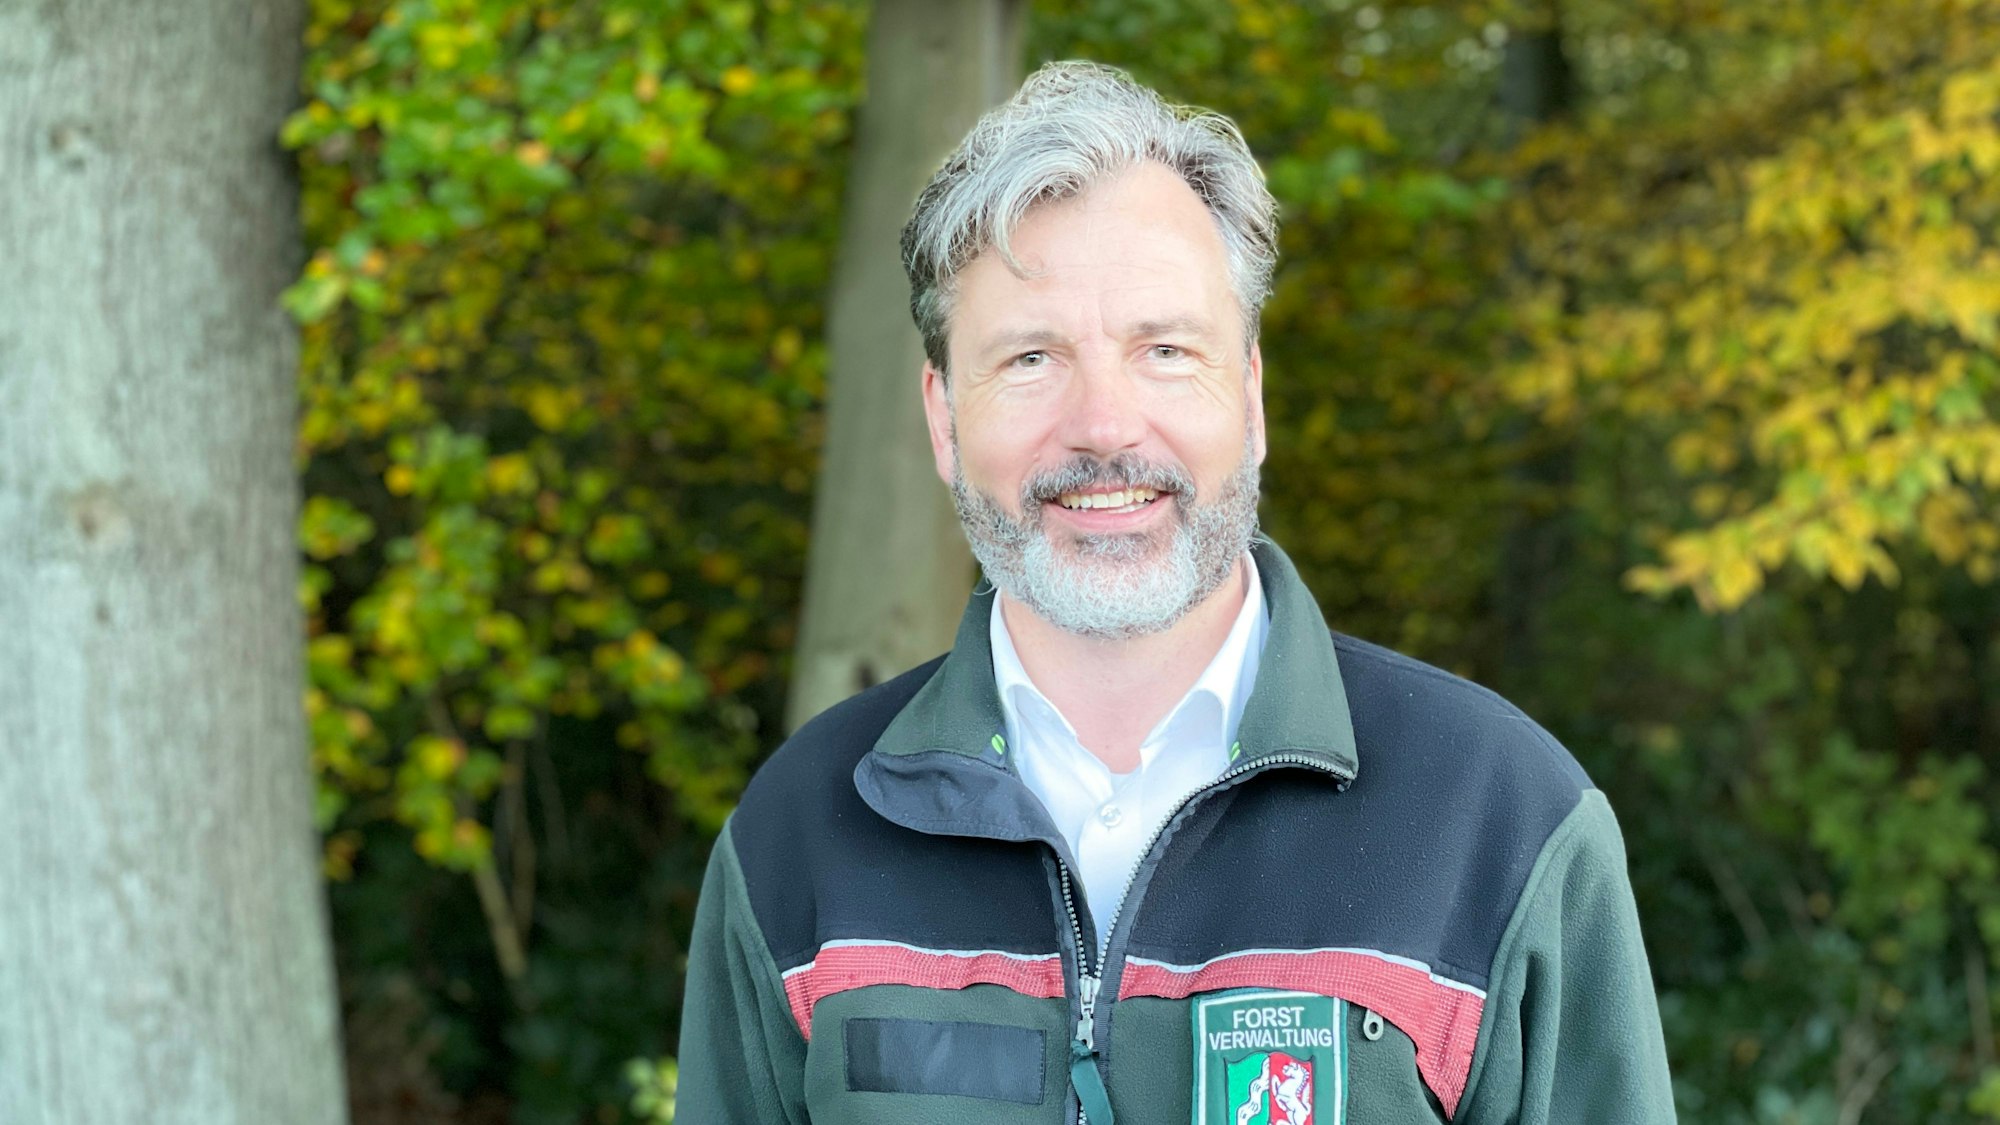 Waldschutzexperte Ralf Petercord vom Forschungsnetzwerk Wald ist im Porträt zu sehen. Er lächelt in die Kamera.